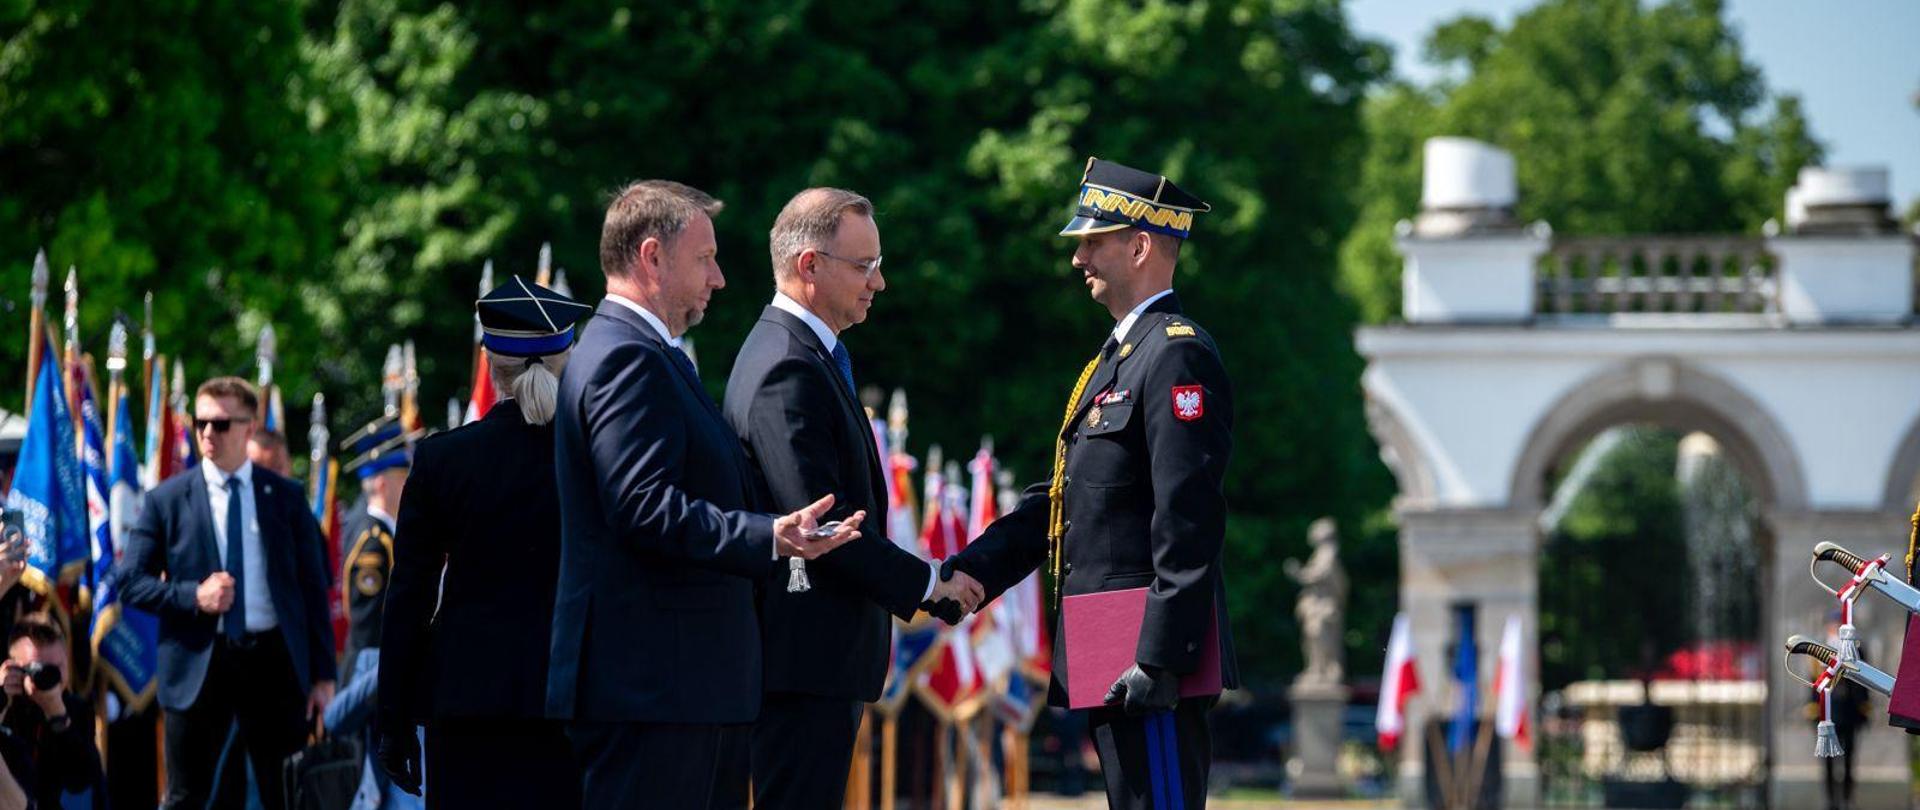 Warmińsko-Mazurski Komendant Wojewódzki PSP awansowany na stopień generalski, odbiera nominacje i szable od Prezydenta Polski i ministra MSWiA.